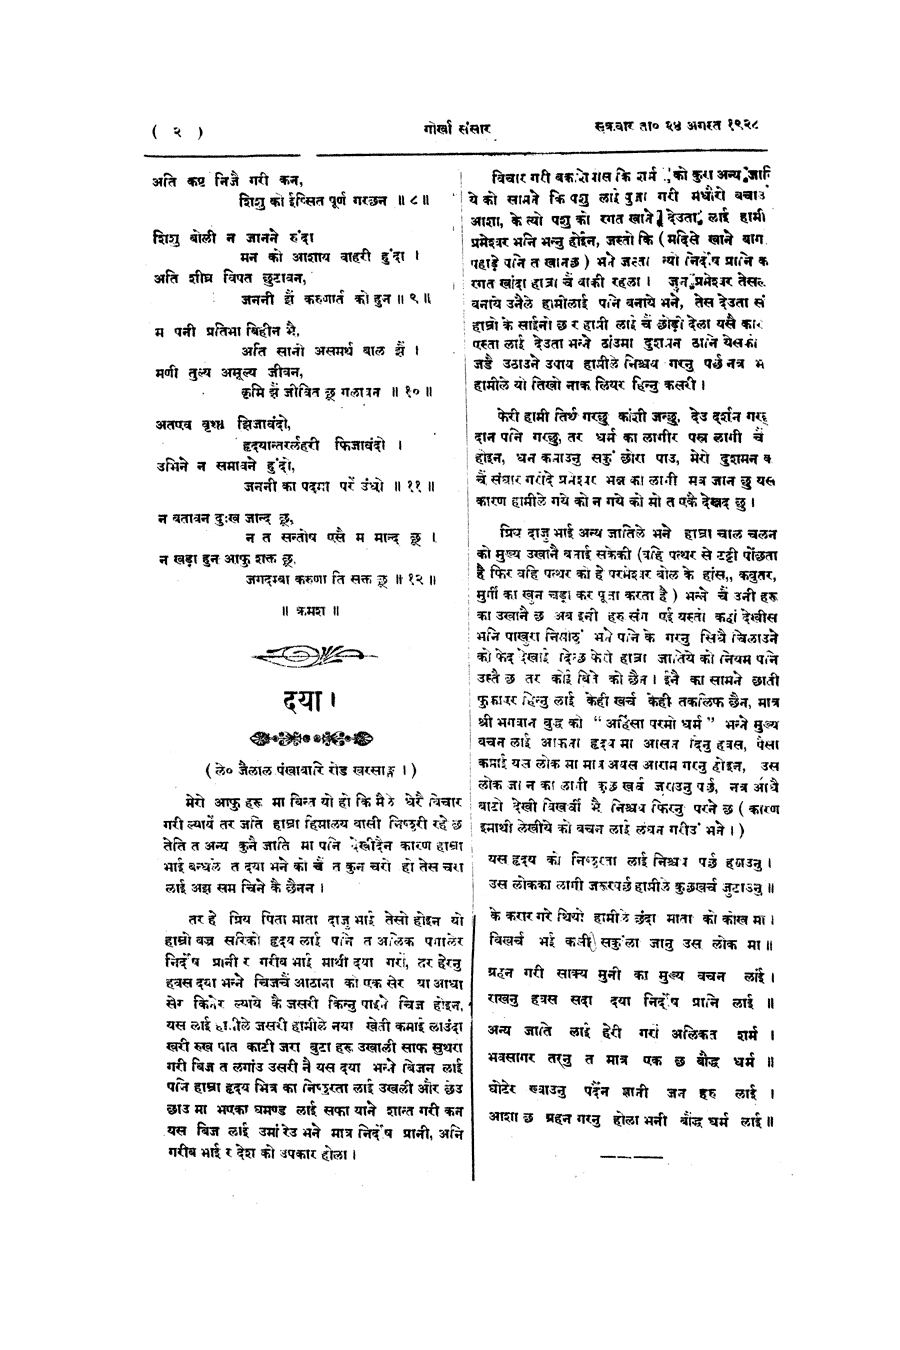 Gorkha Sansar, 24 Aug 1928, page 2